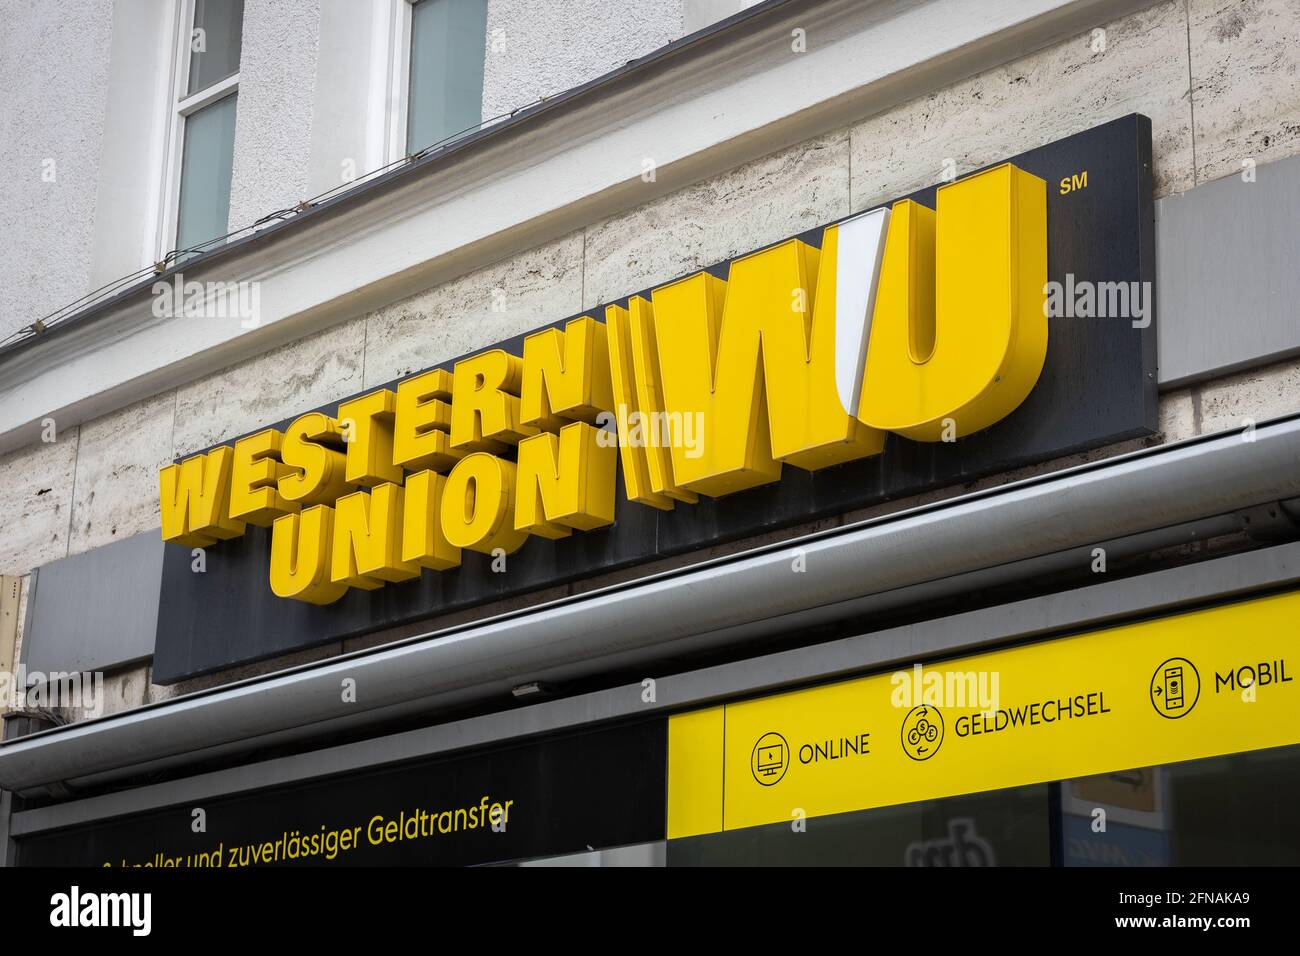 WESTERN Union Store-Schild im Stadtzentrum von München Stockfotografie -  Alamy